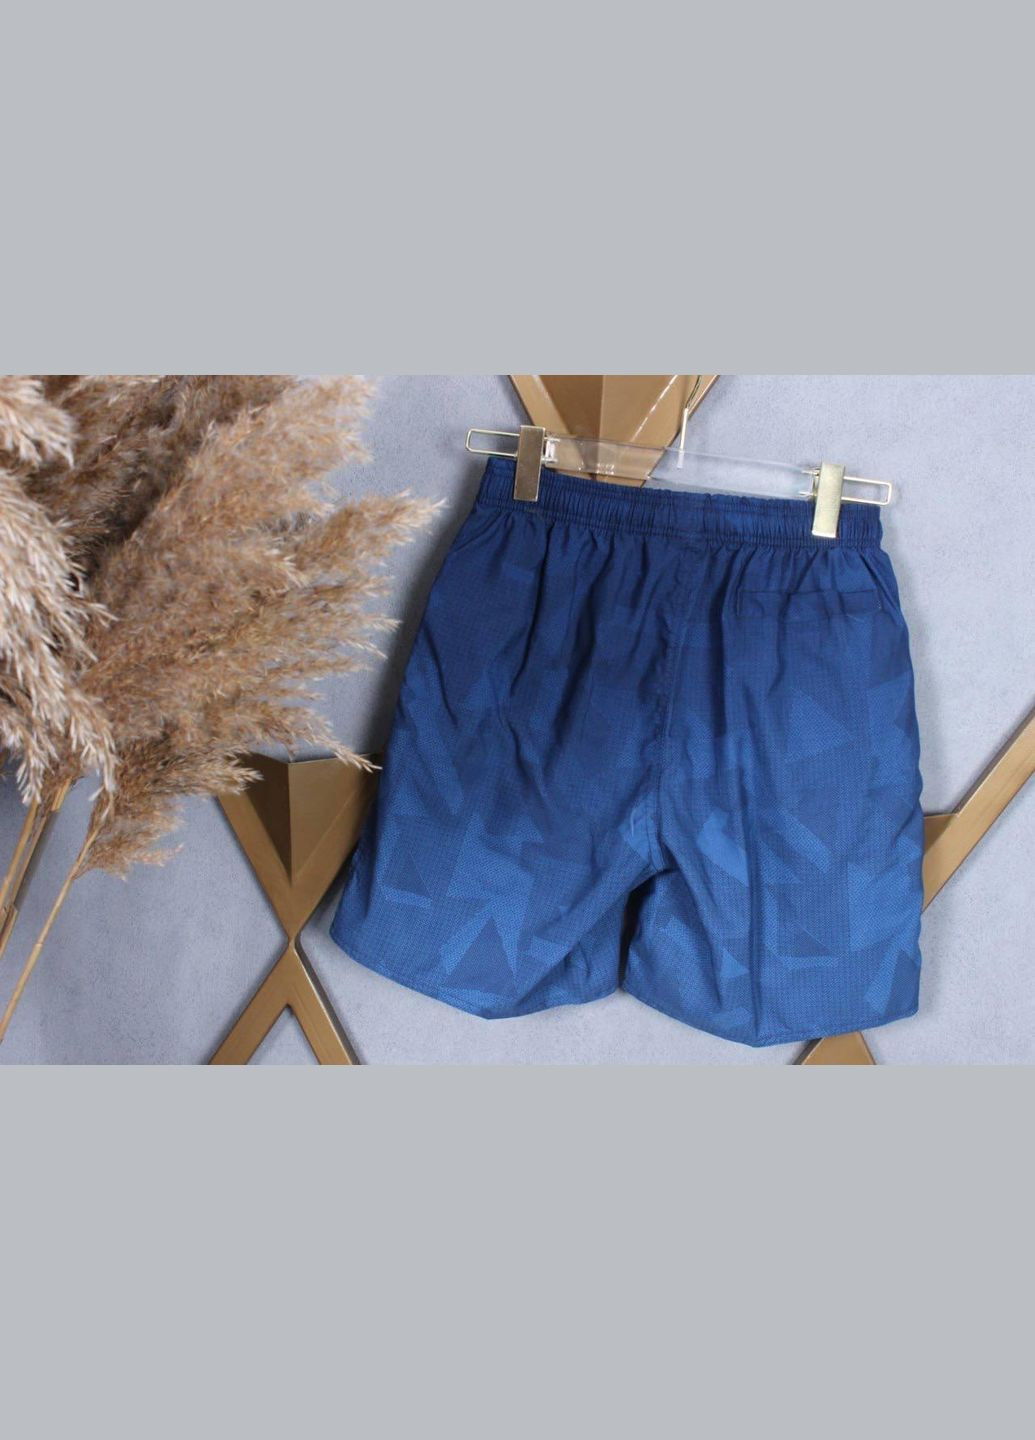 Фабричные шорты для мужчин D-2385 Синий, 3XL Sofia (268025174)